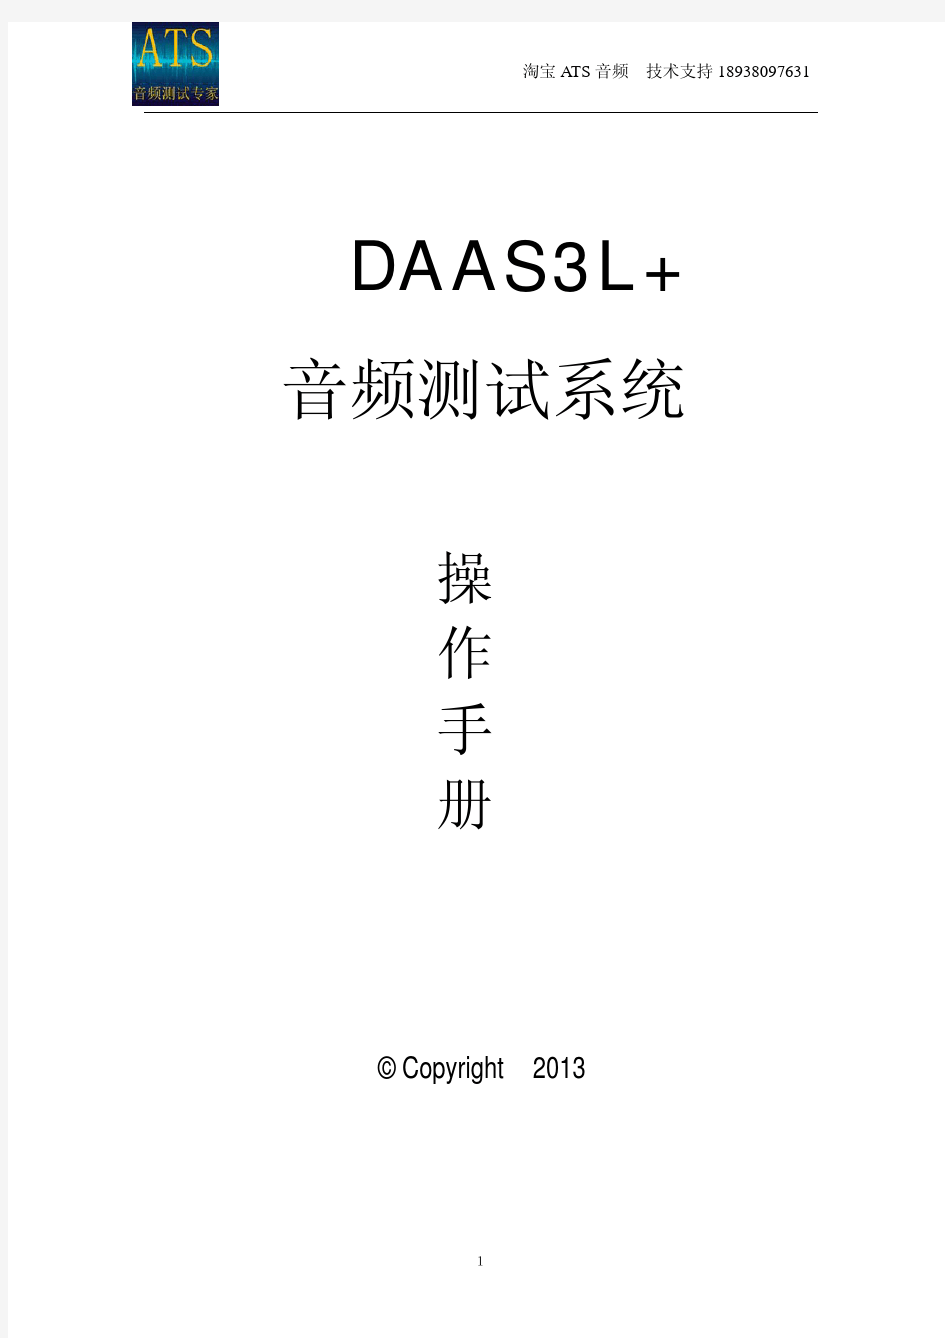 DAAS音频测试系统操作手册